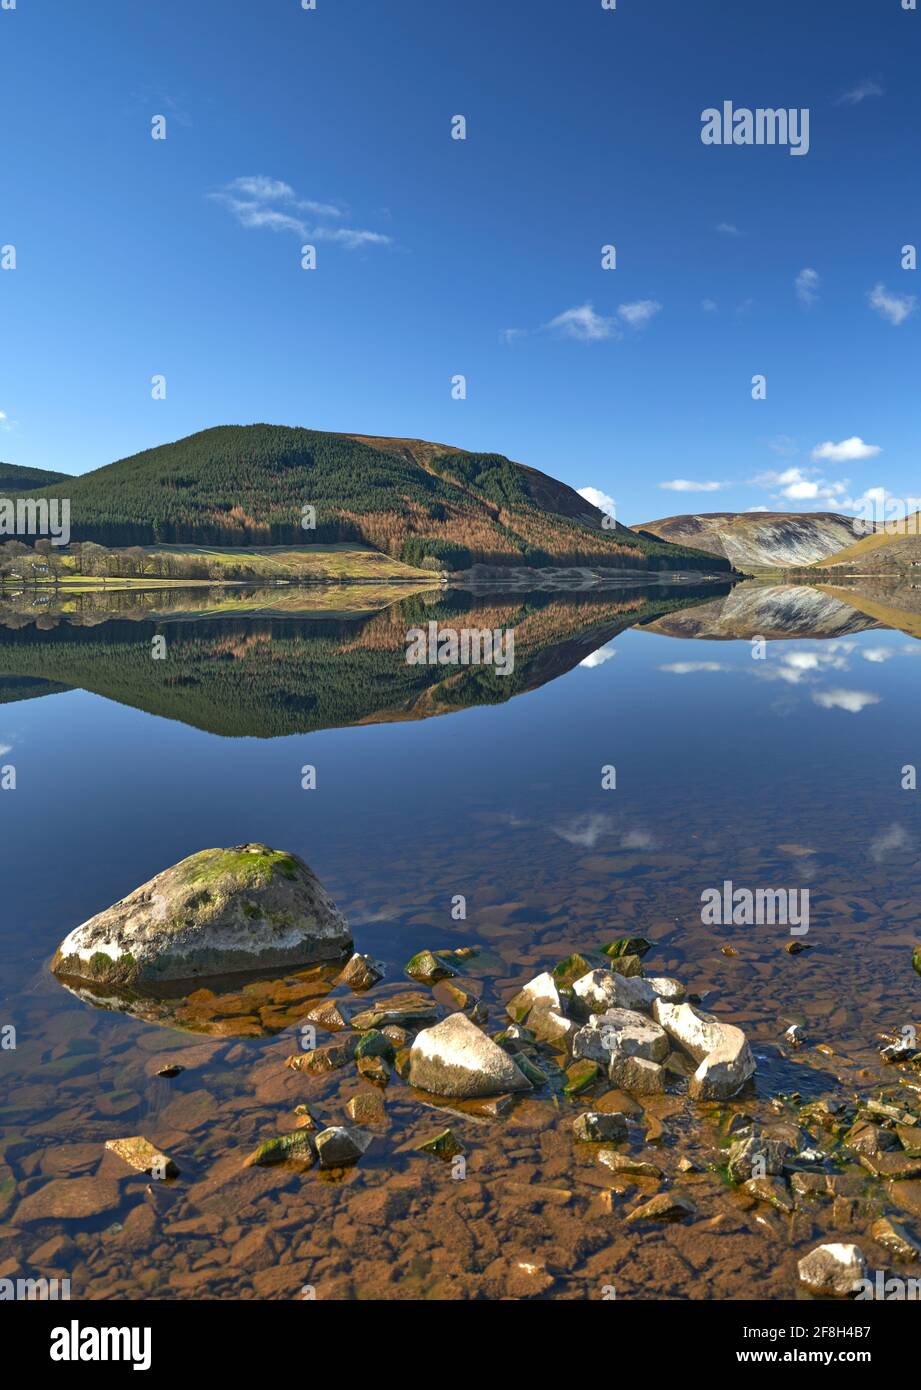 Splendidi riflessi delle colline che circondano il lago di St. Mary in una mattina di primavera senza fiato e soleggiata ai confini scozzesi. Foto Stock